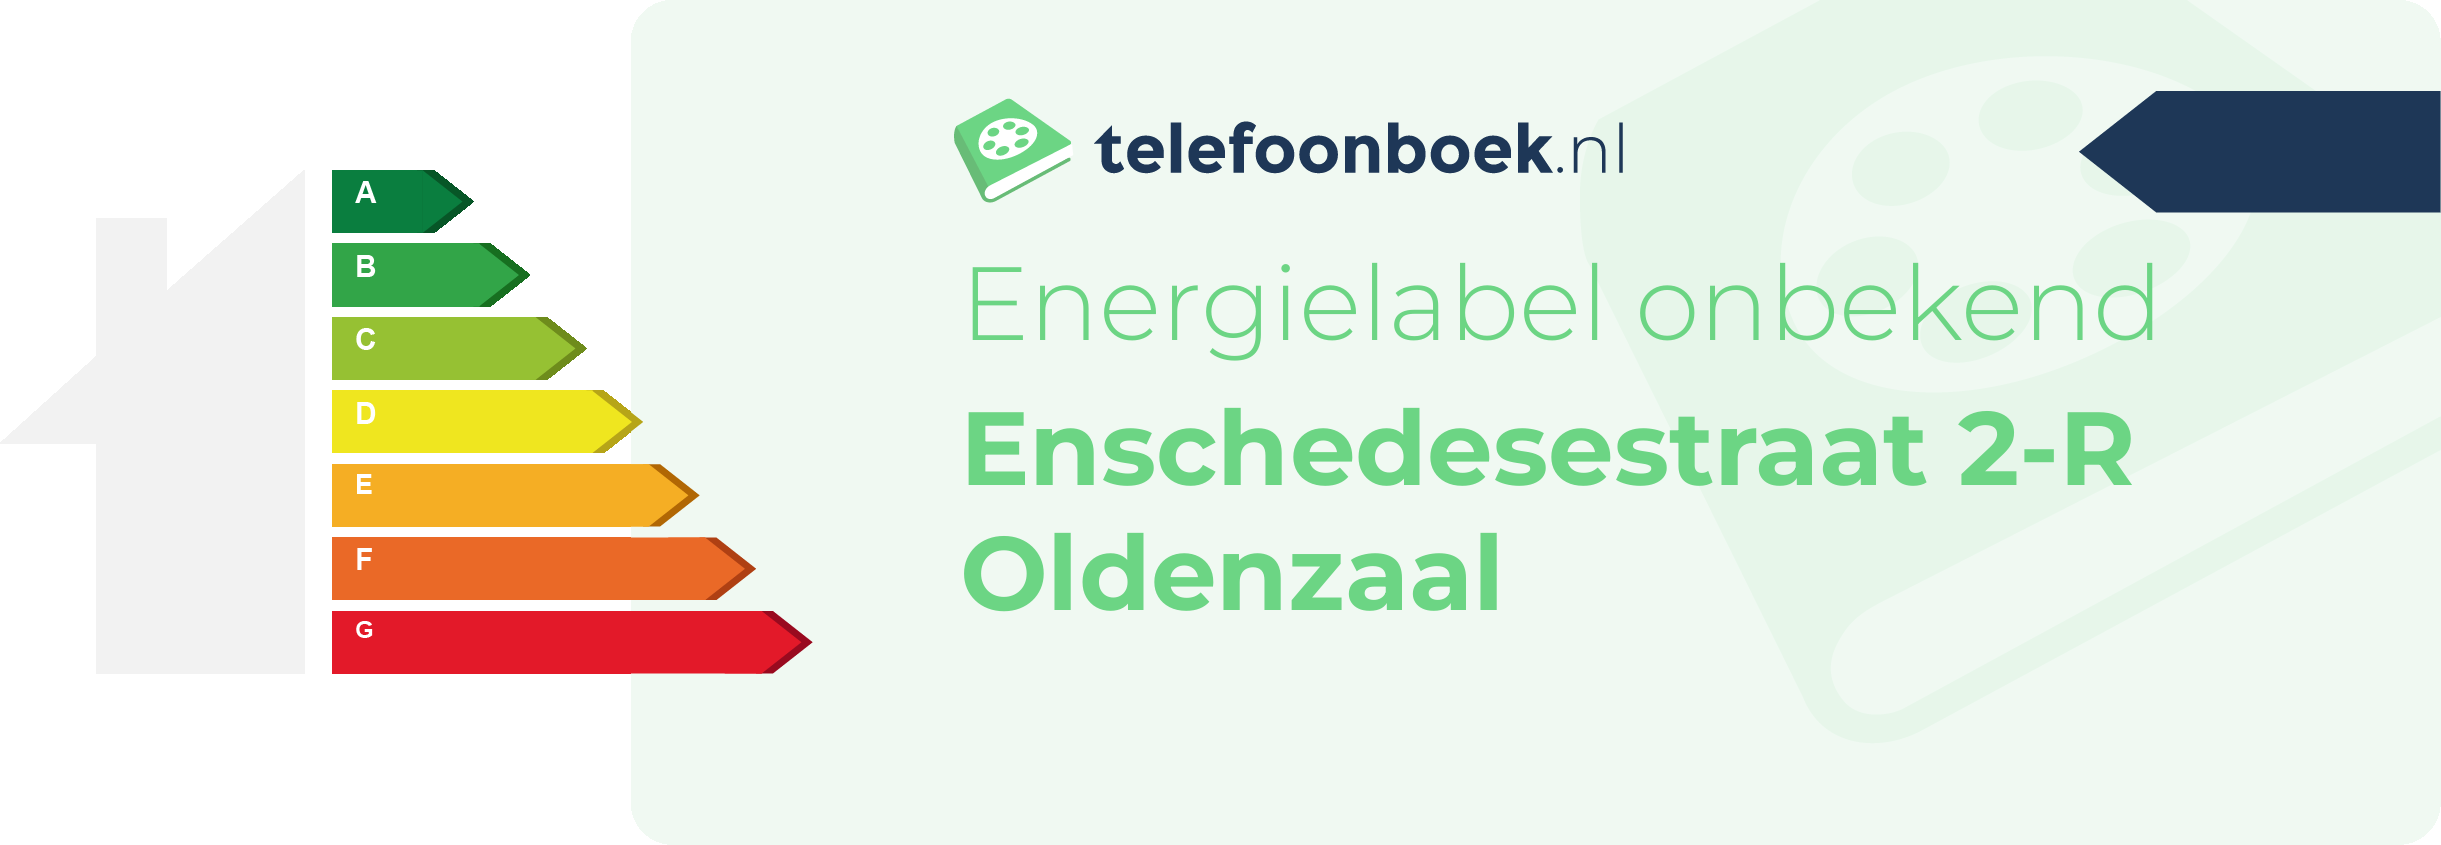 Energielabel Enschedesestraat 2-R Oldenzaal